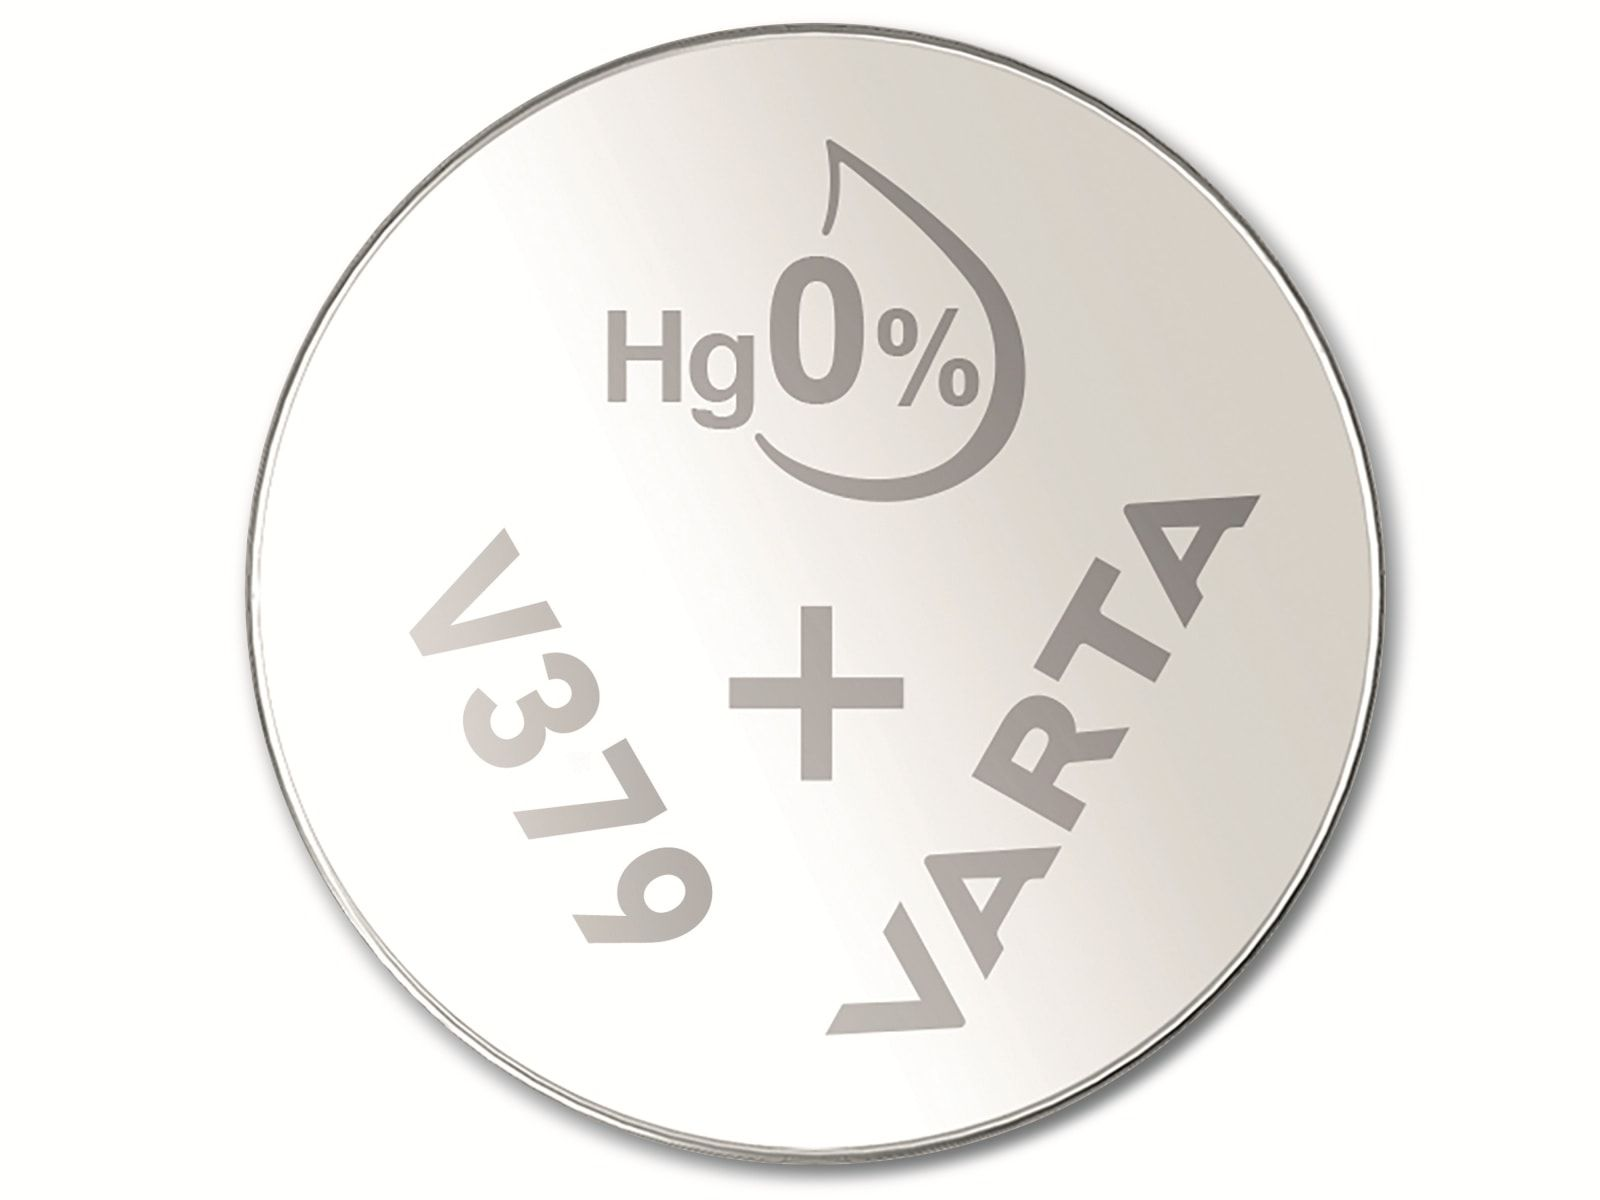 VARTA Knopfzelle Oxide, 10 Knopfzelle SR63, 1.55V, Stück 379 Silver Silberoxid